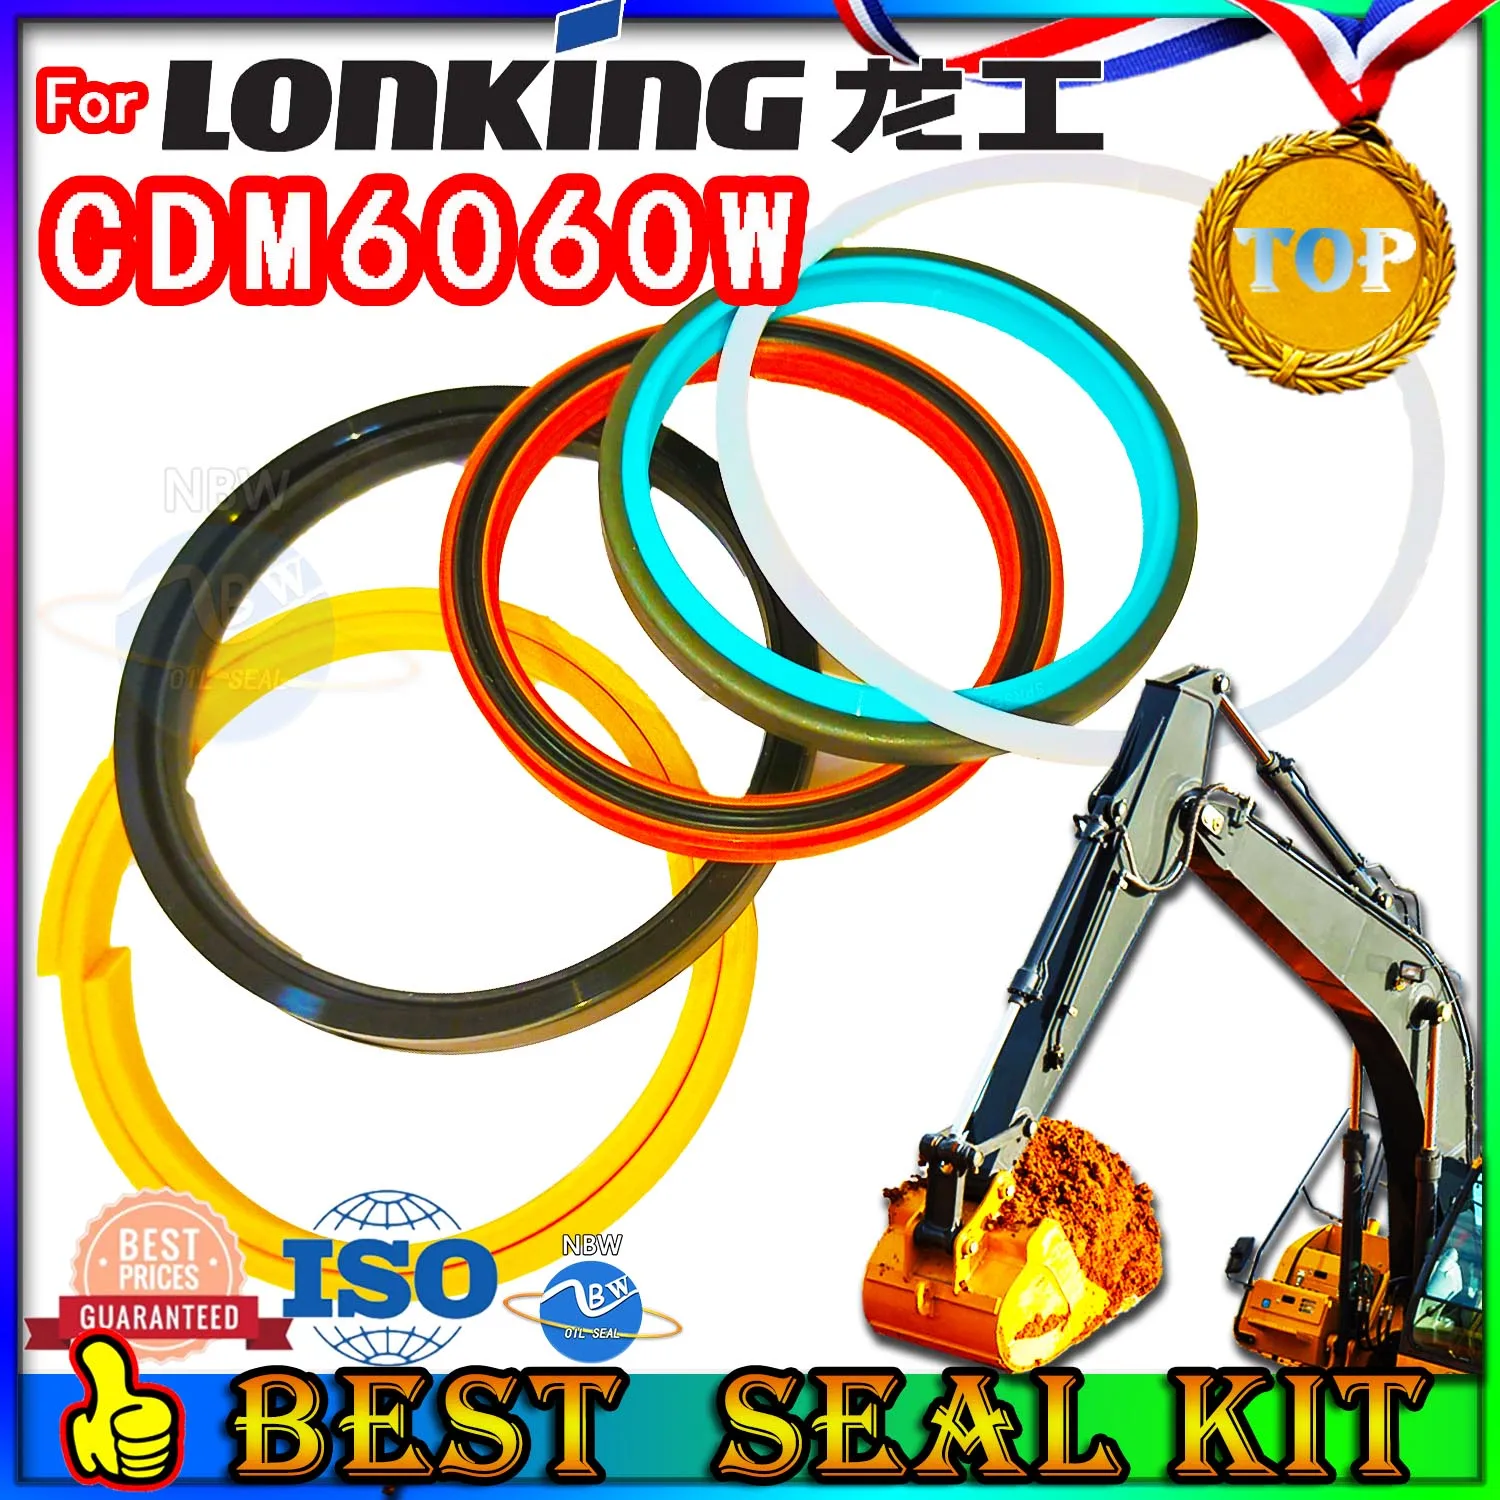 

Для Lonking CDM6060W, масло комплект для ремонта уплотнений, экскаватор, гидравлический цилиндр, тяжелый мастер, экскаватор, плавающее оборудование